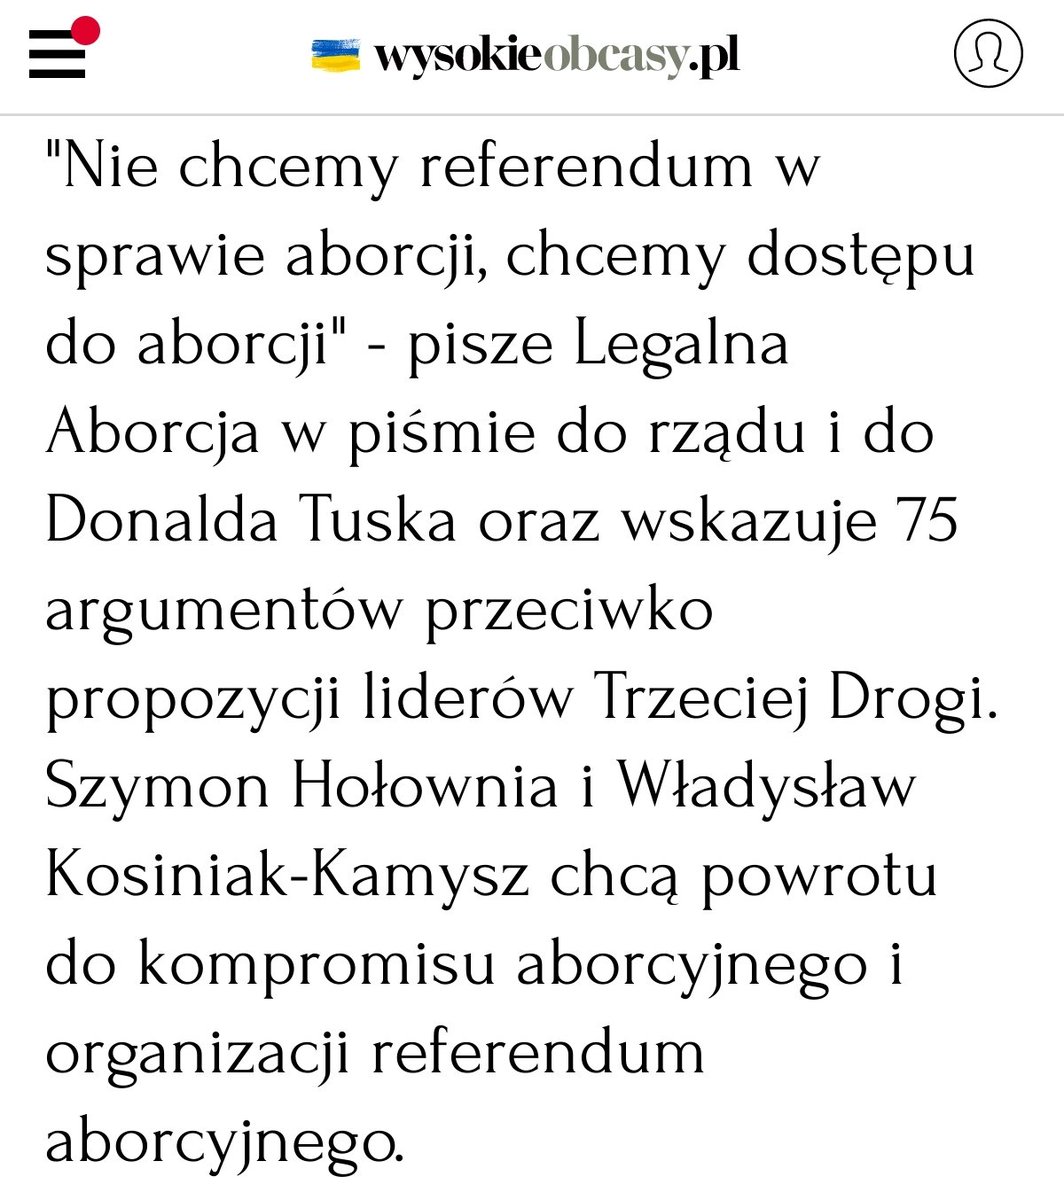 ❗❗❗ 75 argumentów, dlaczego referendum ws. aborcji to zły pomysł ❗❗❗ Podpisałaś/eś już petycję do @donaldtusk, aby @KO_Obywatelska zagłosowała przeciwko referendum? 👇 amnesty.org.pl/75-powodow-dla…